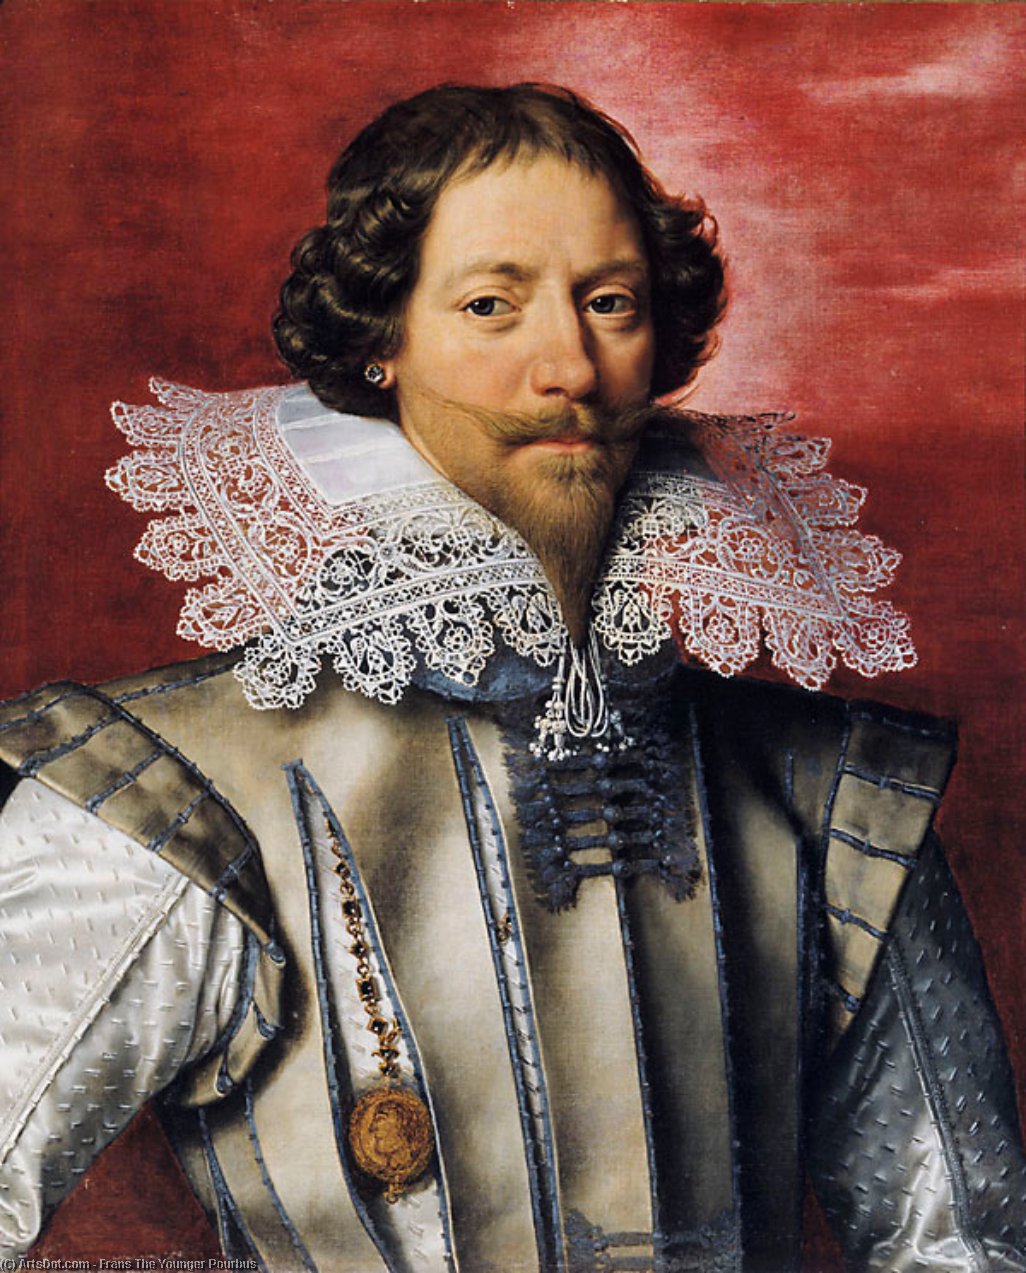 WikiOO.org - Enciklopedija dailės - Tapyba, meno kuriniai Frans The Younger Pourbus - Portrait of a Frenchman